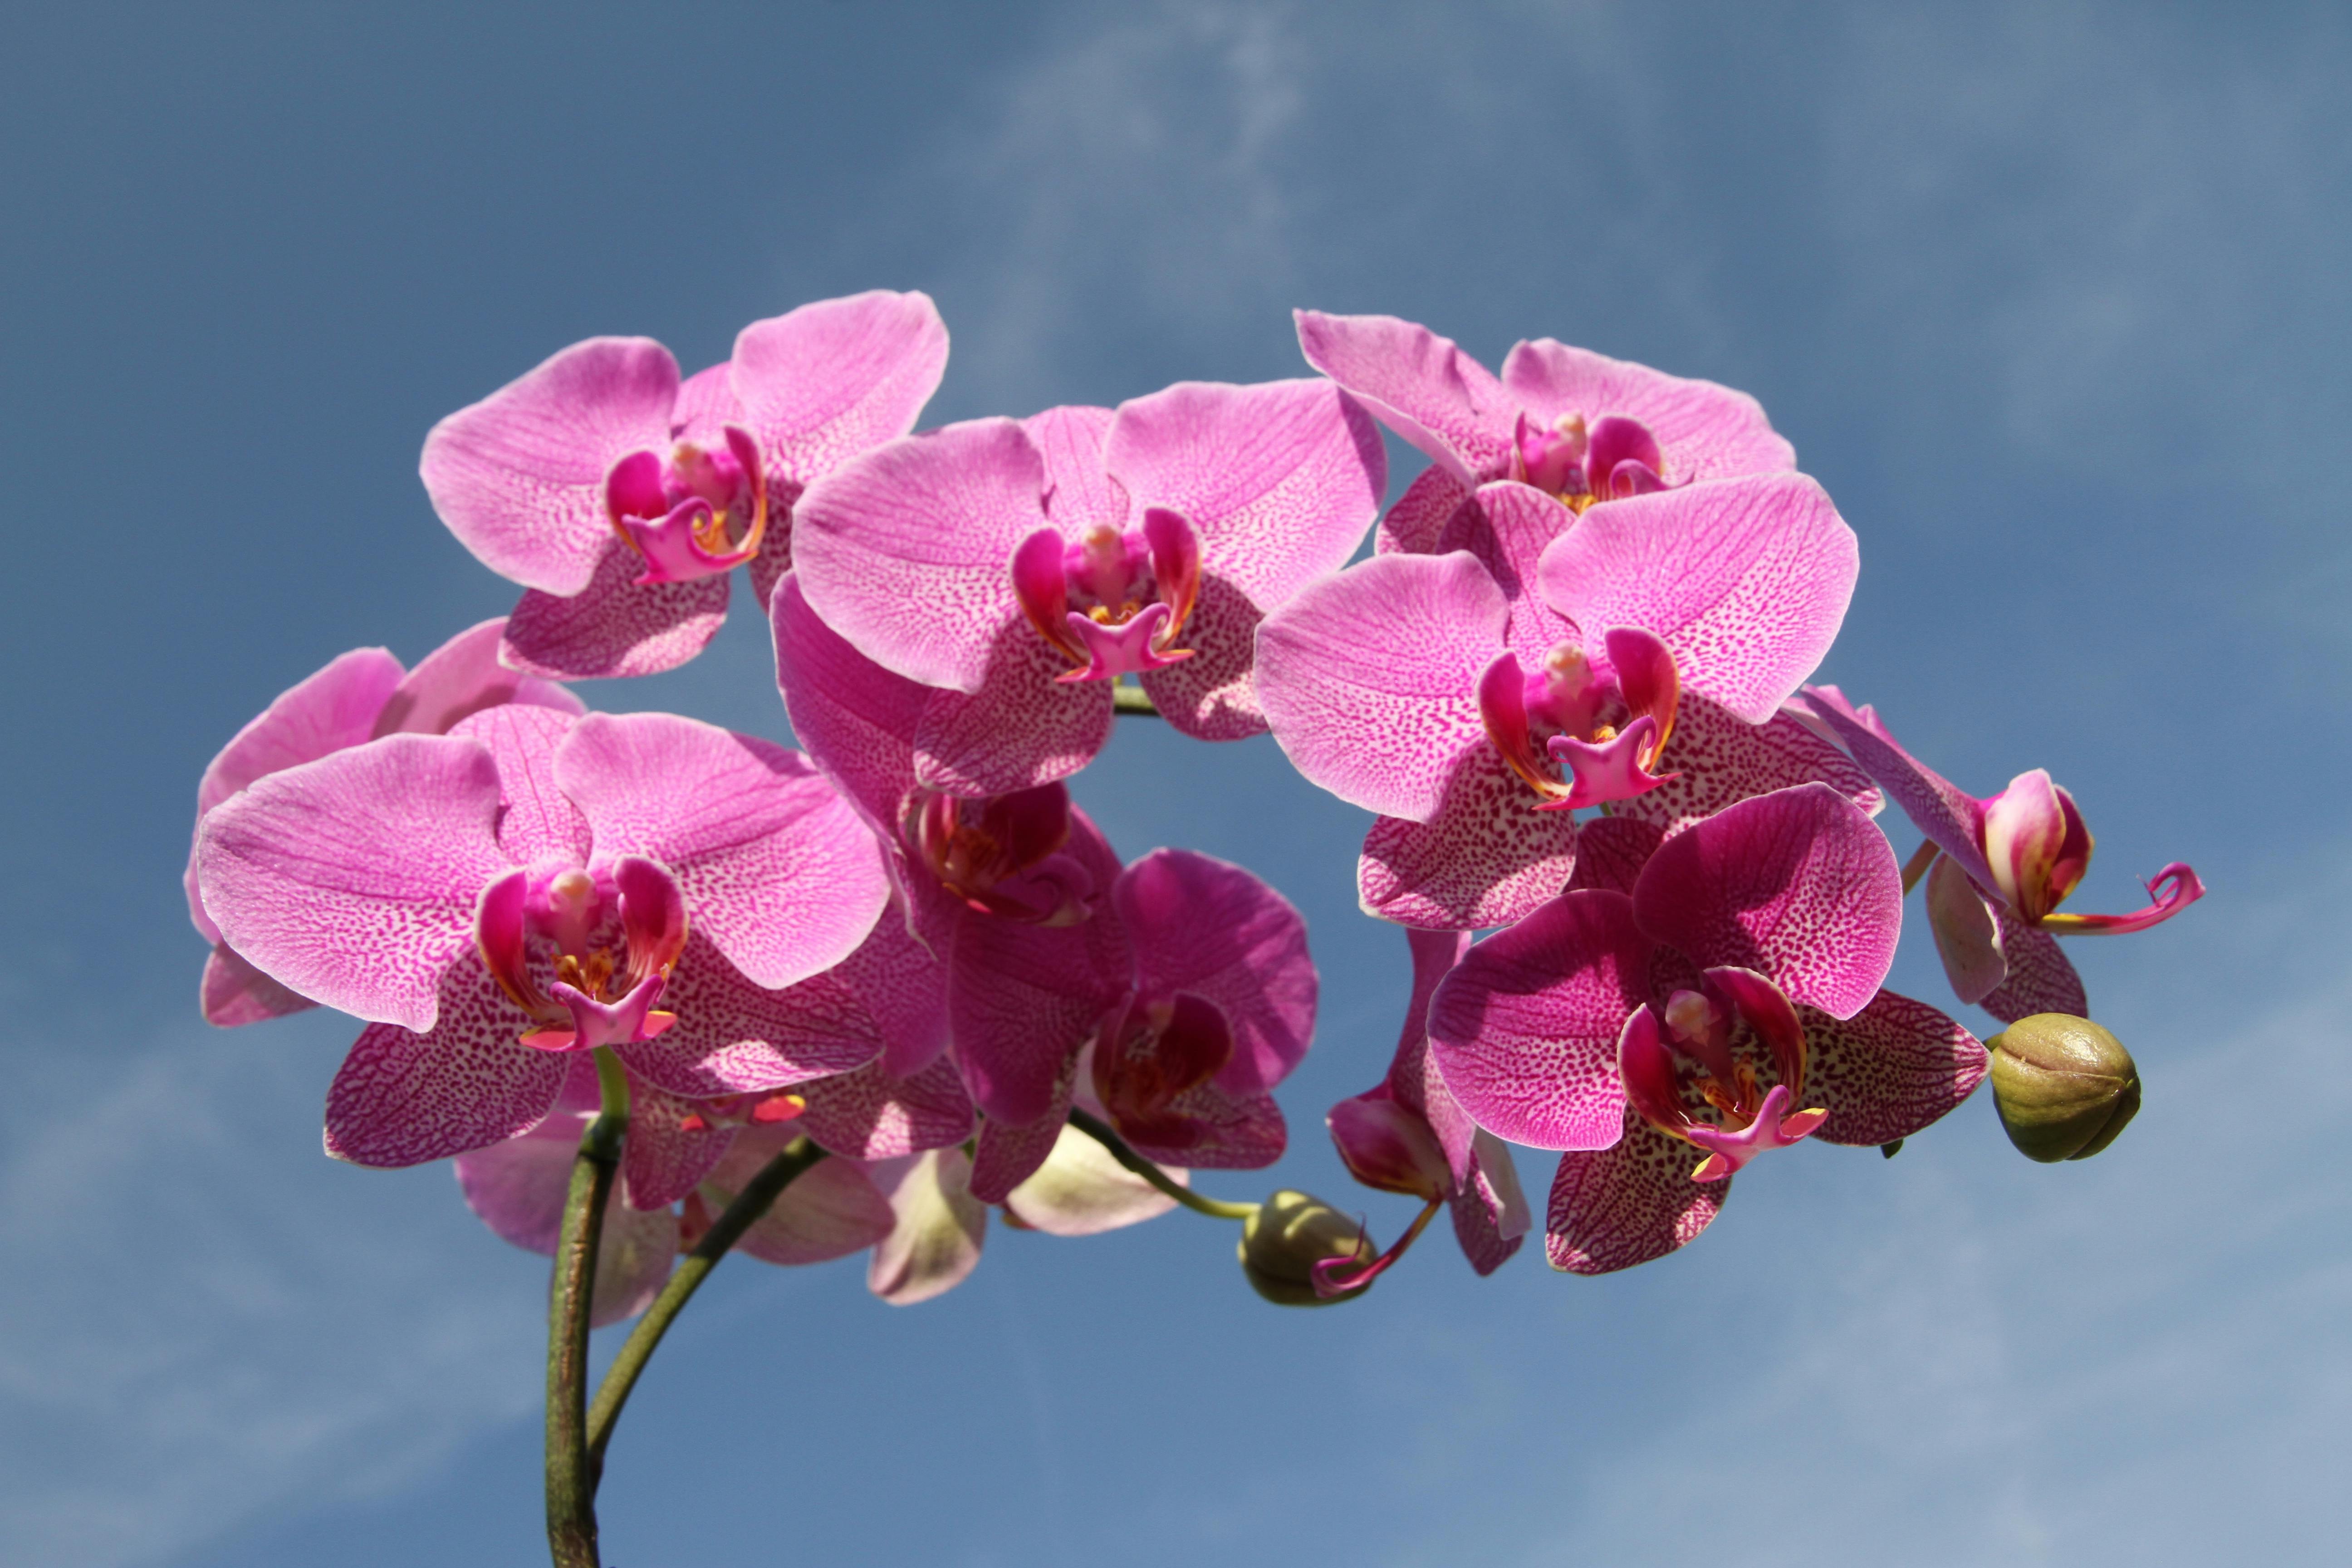 Études de cas : exemples remarquables de symbiose des orchidées à travers le monde